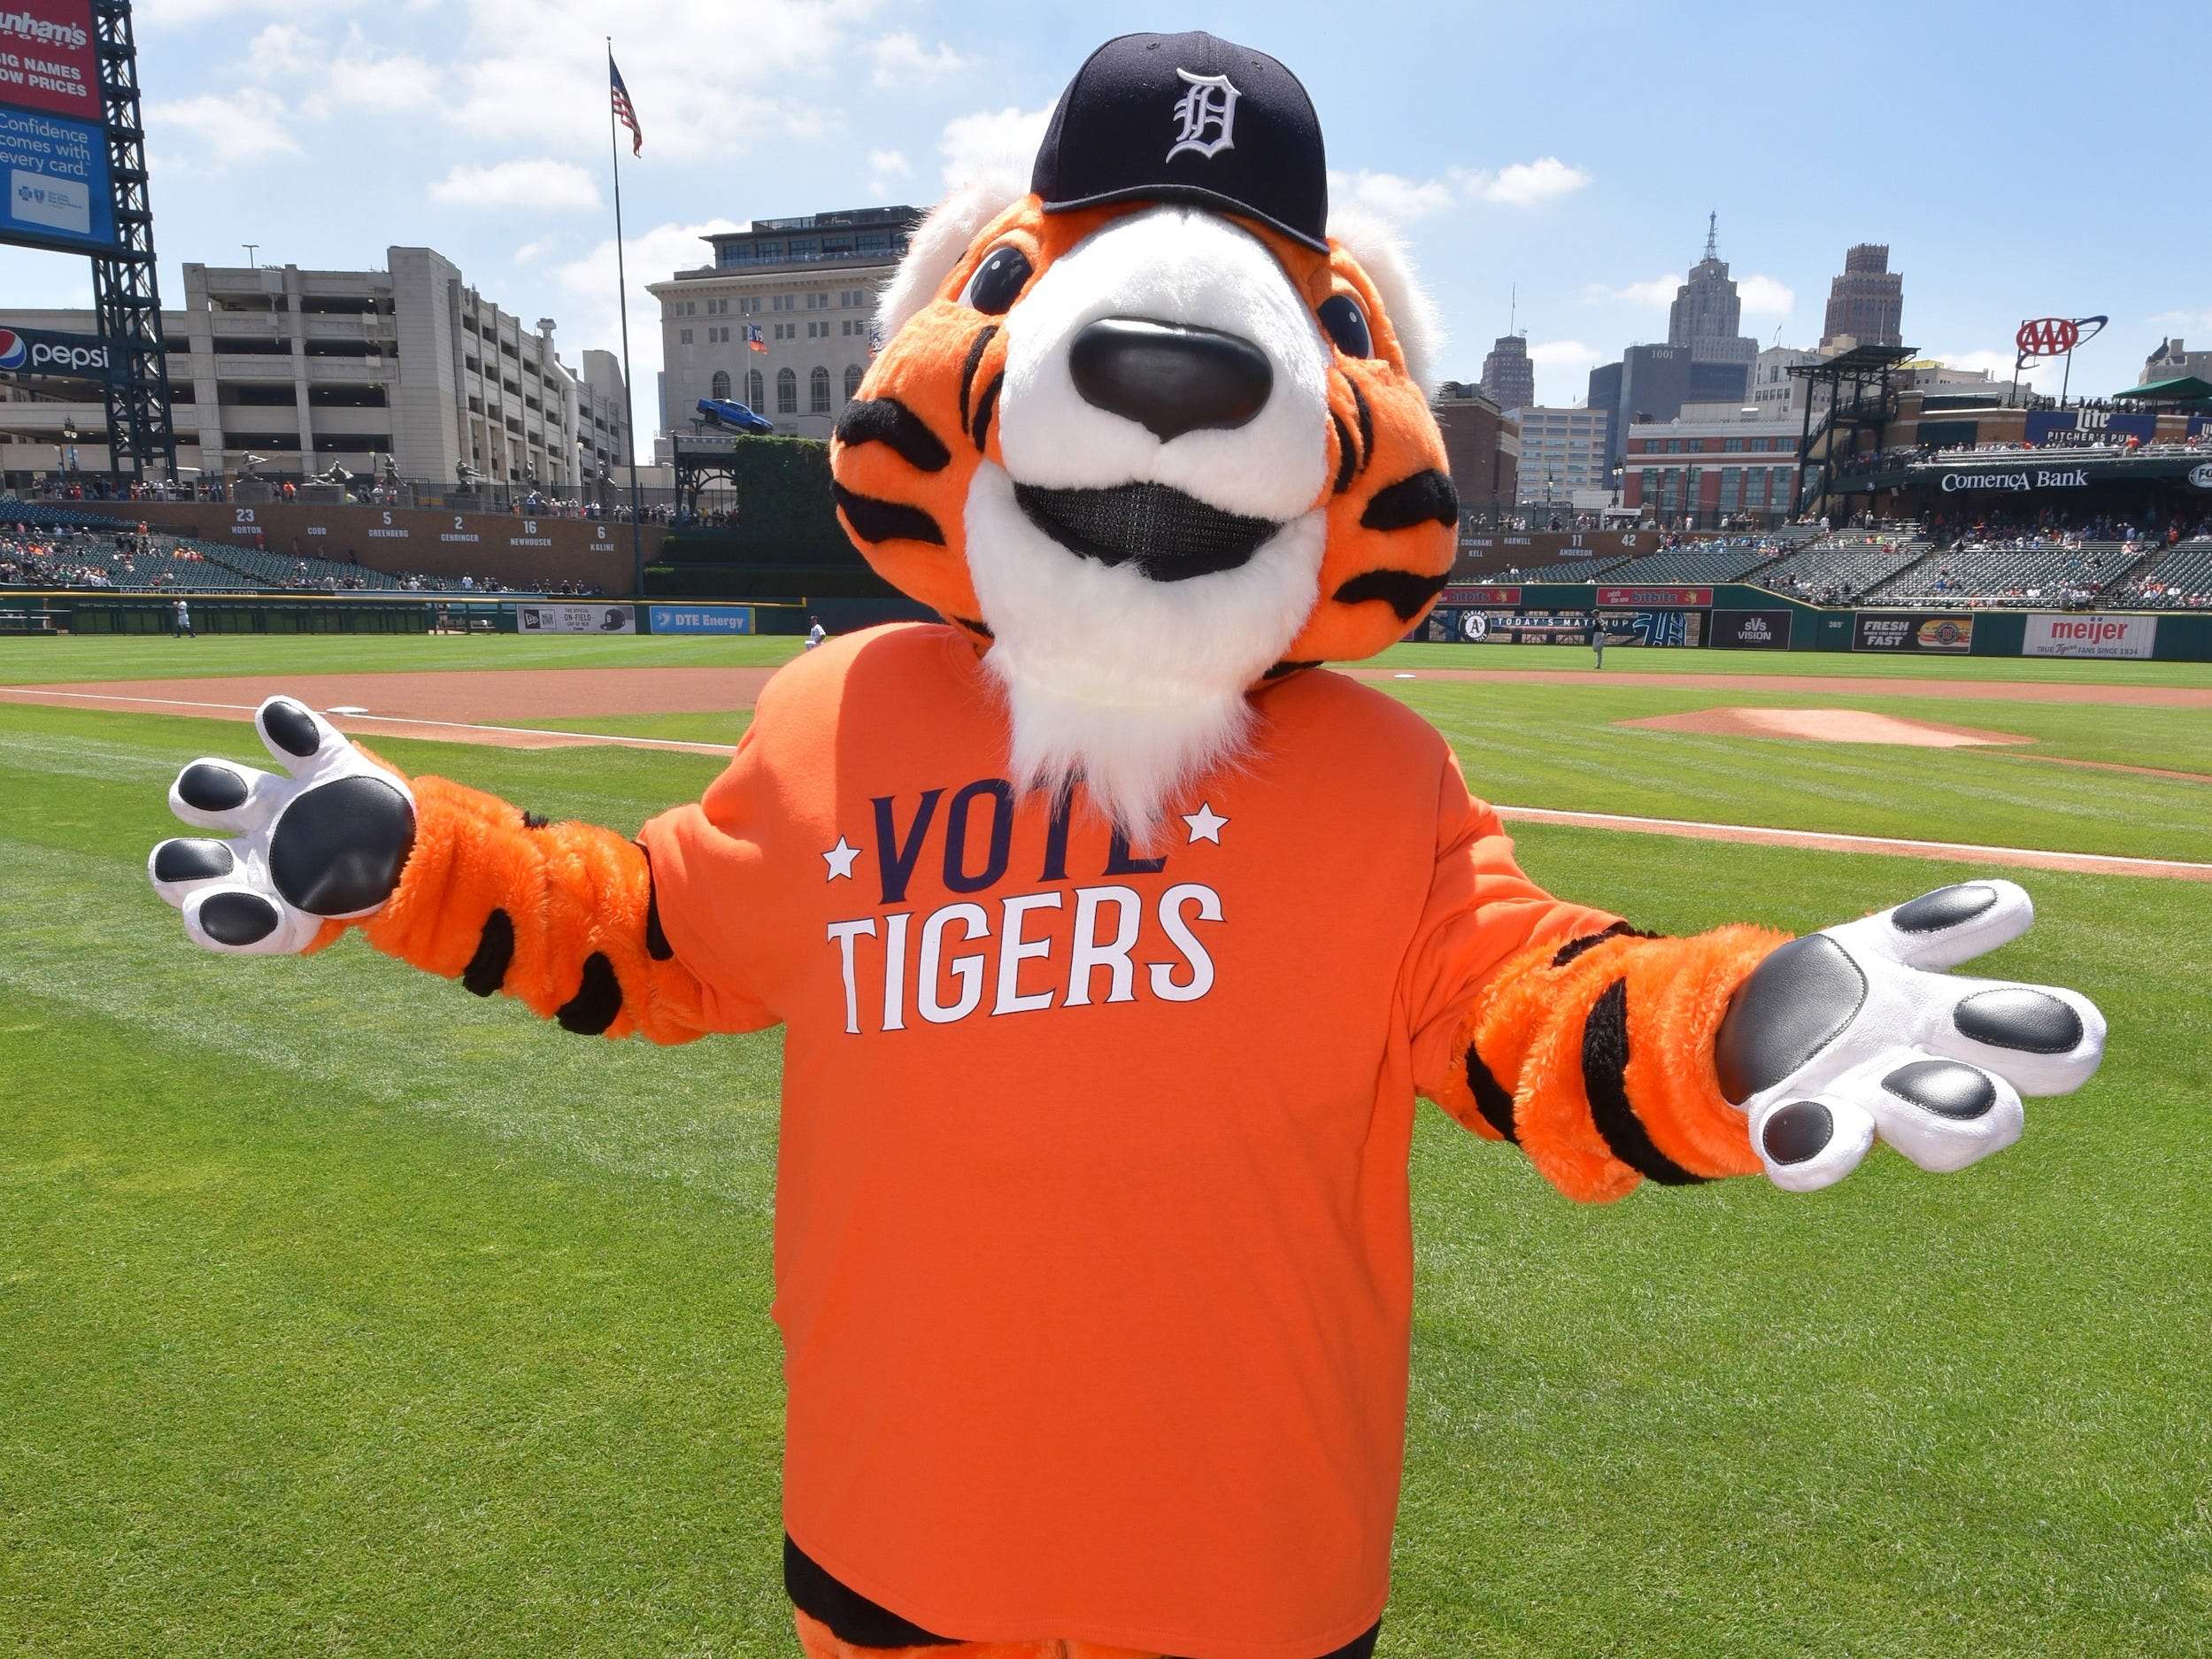 Detroit Tigers MLB Paws Large Plush Mascot